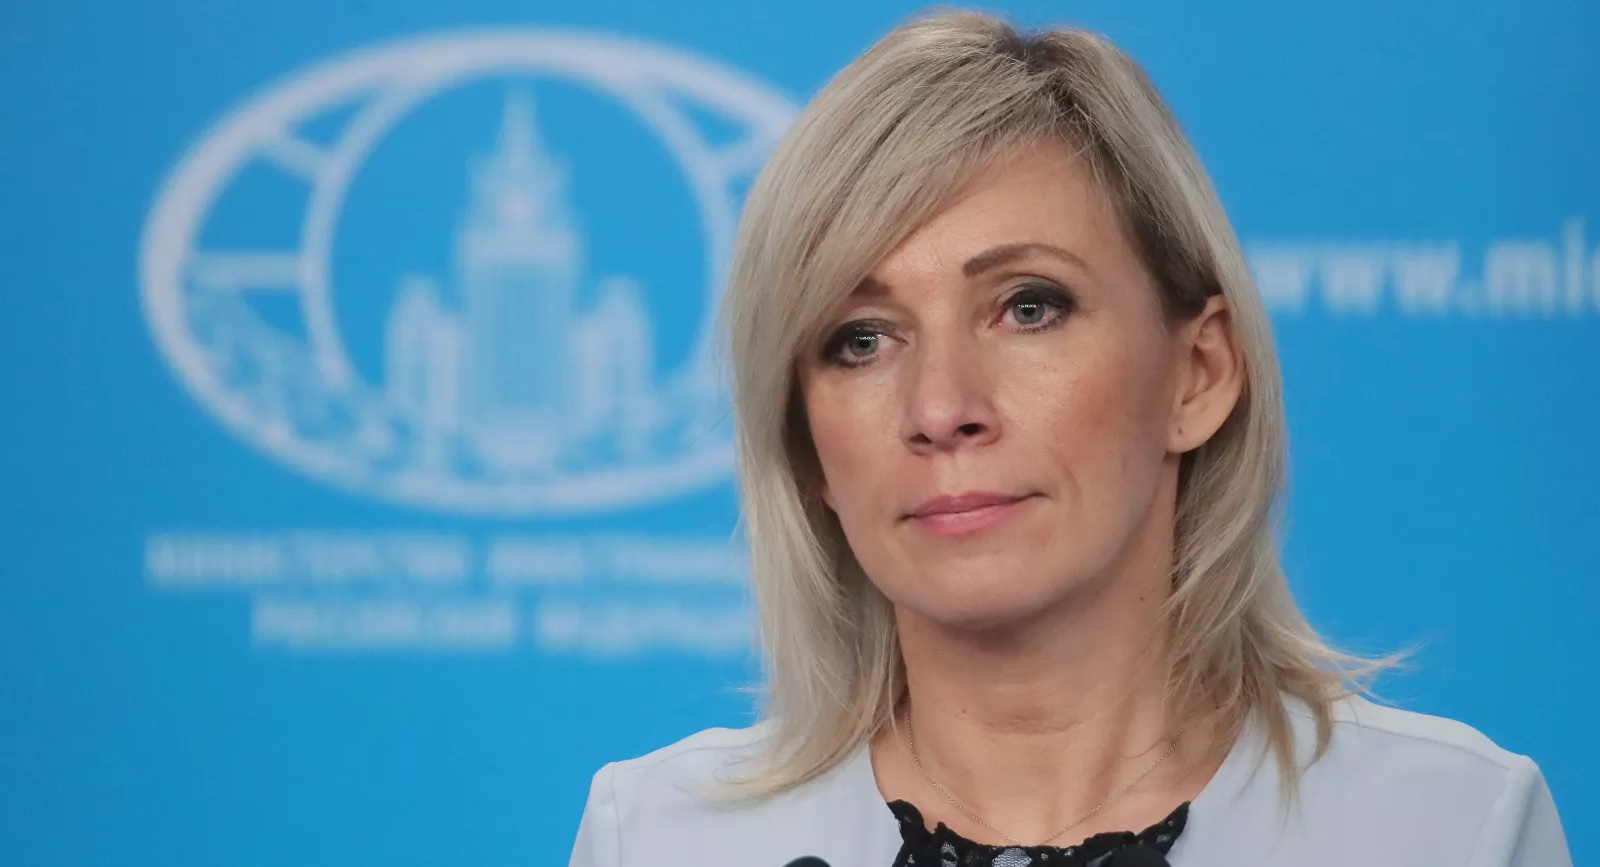 Захарова раскритиковала Германию и Францию из-за КПВВ на Донбассе: "Политика двойных стандартов"